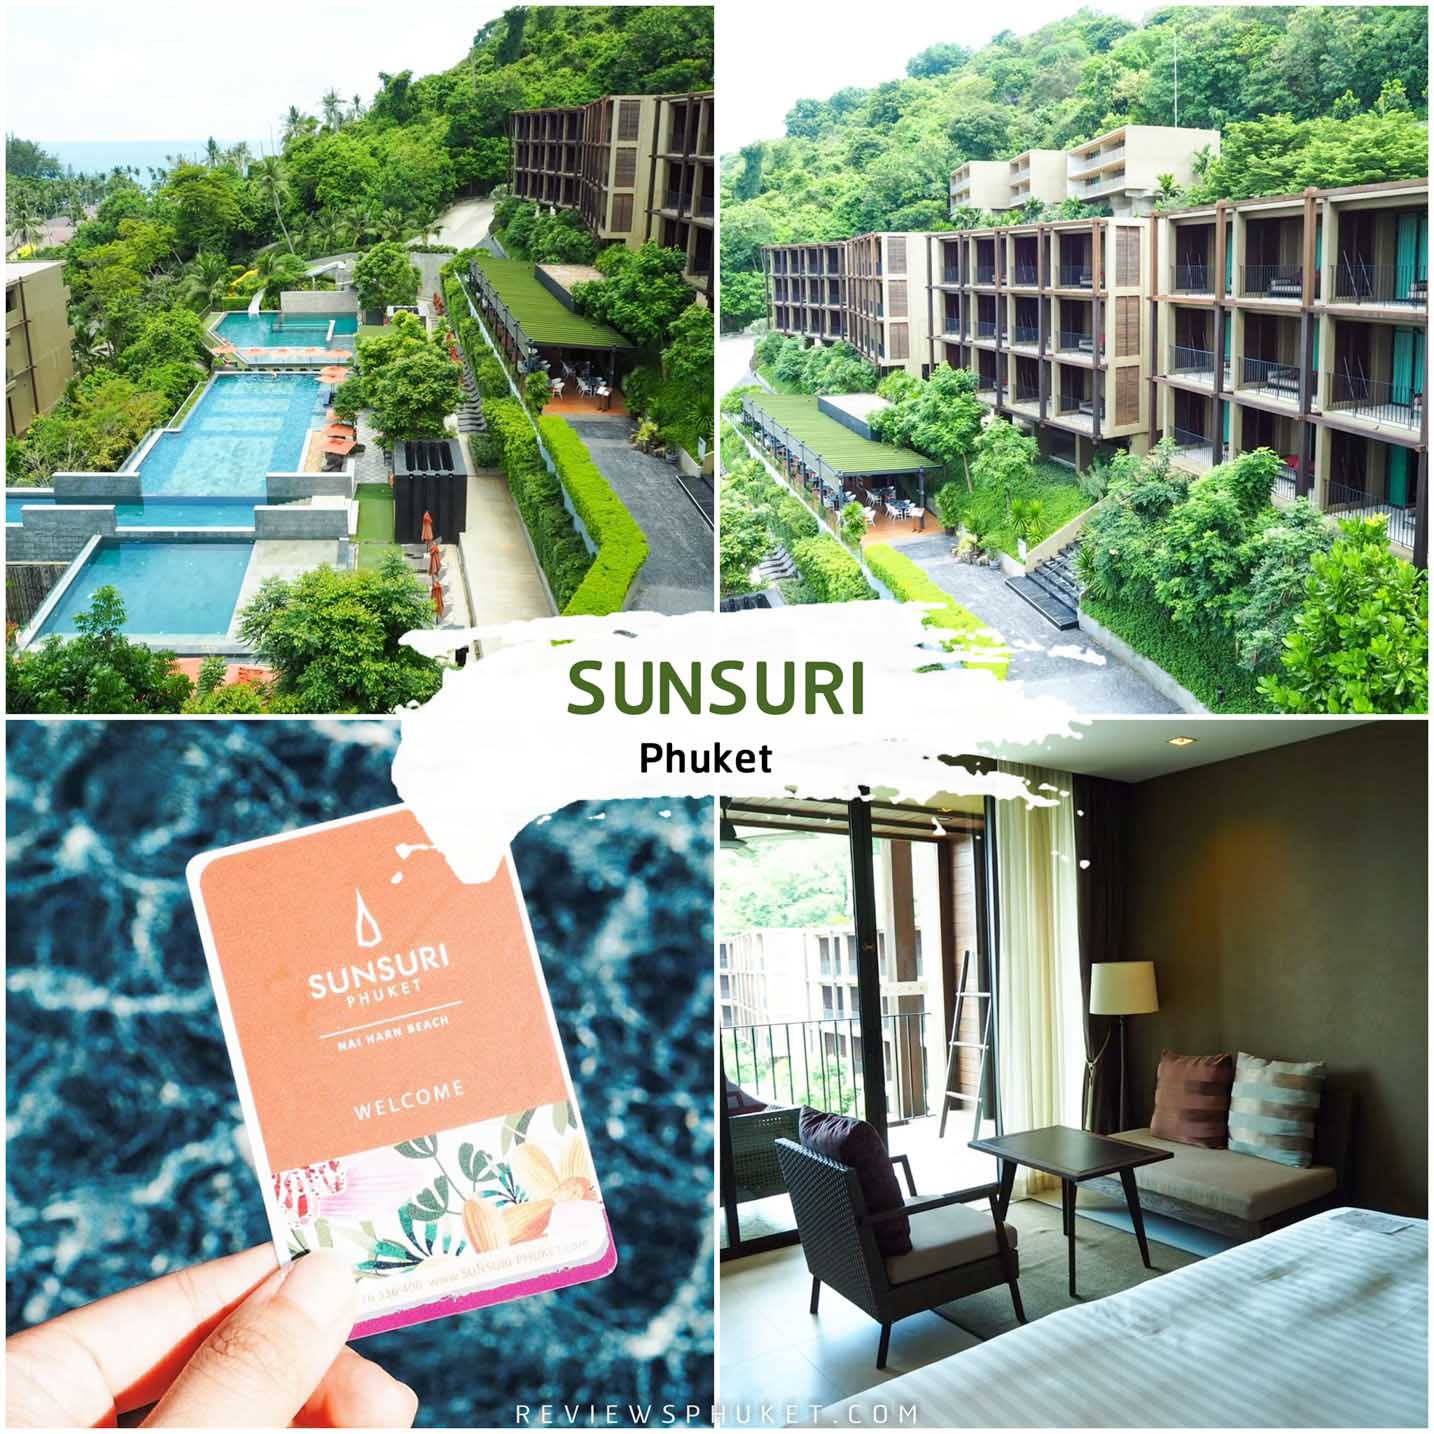 Sunsuri Phuket ที่พักภูเก็ตสุดสวย โอบล้อมไปด้วยสีเขียวฟินๆ